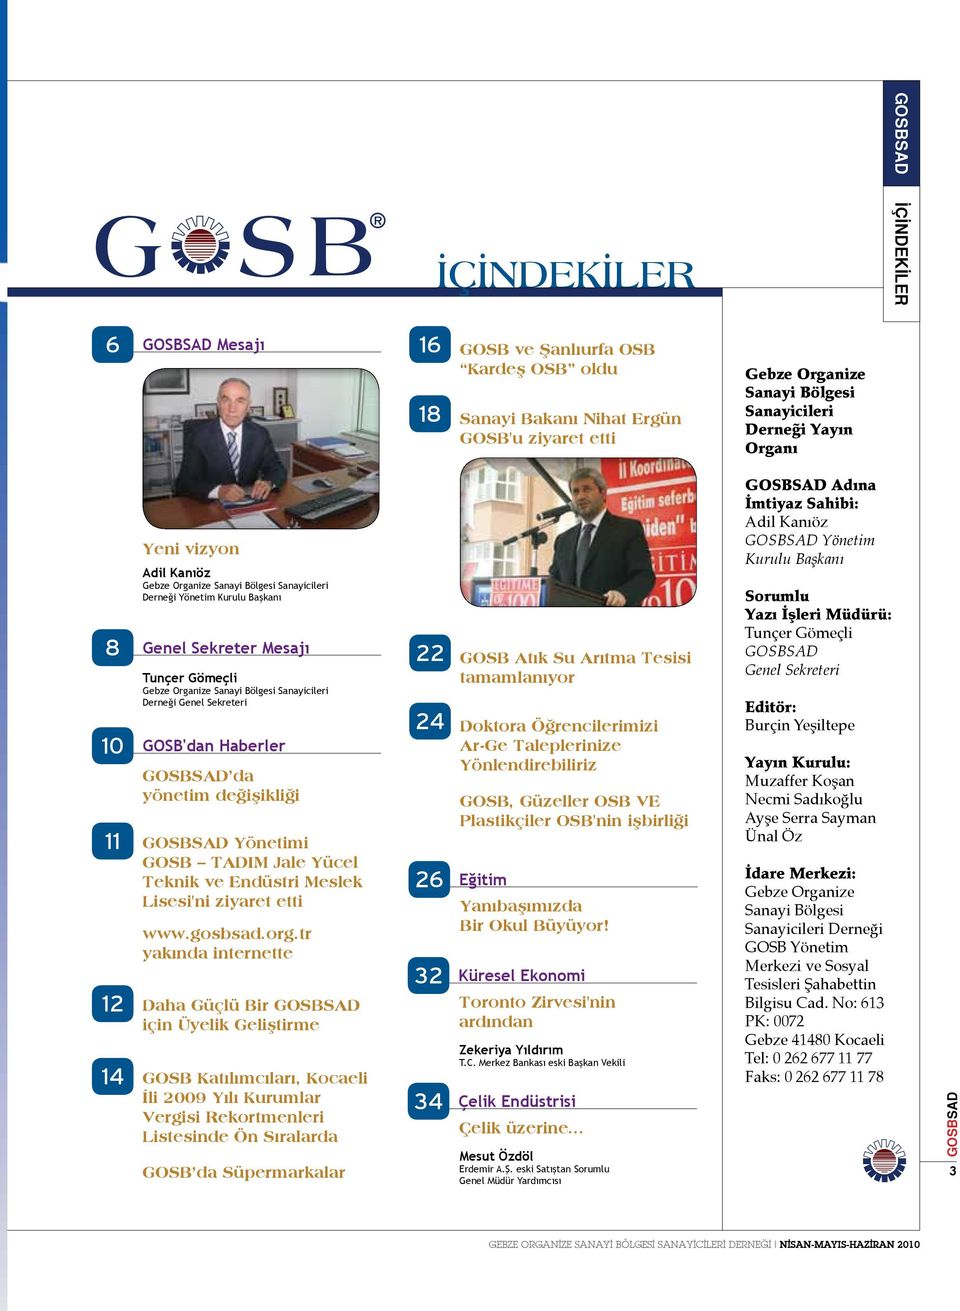 10 GOSB'dan Haberler da yönetim değişikliği 11 Yönetimi GOSB TADIM Jale Yücel Teknik ve Endüstri Meslek Lisesi'ni ziyaret etti www.gosbsad.org.